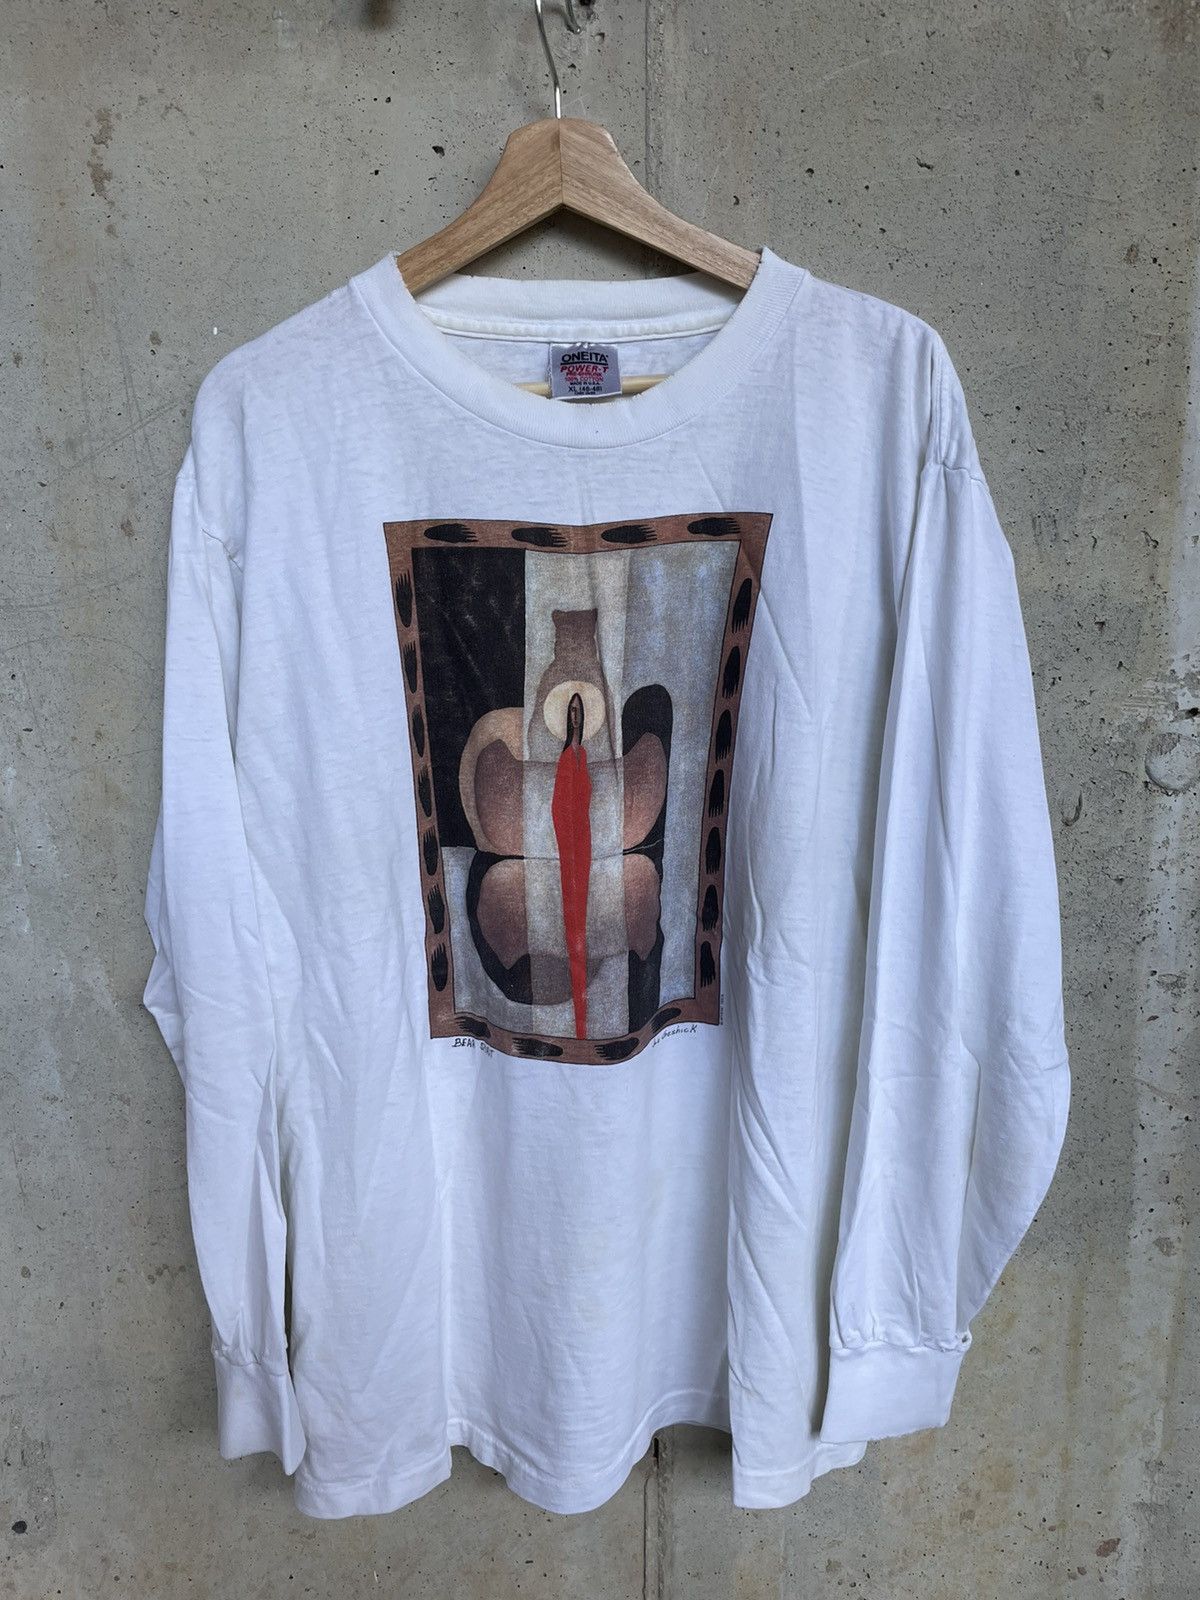 Joe Geshick Tシャツ 90s アートT vintage ONEITA-eastgate.mk